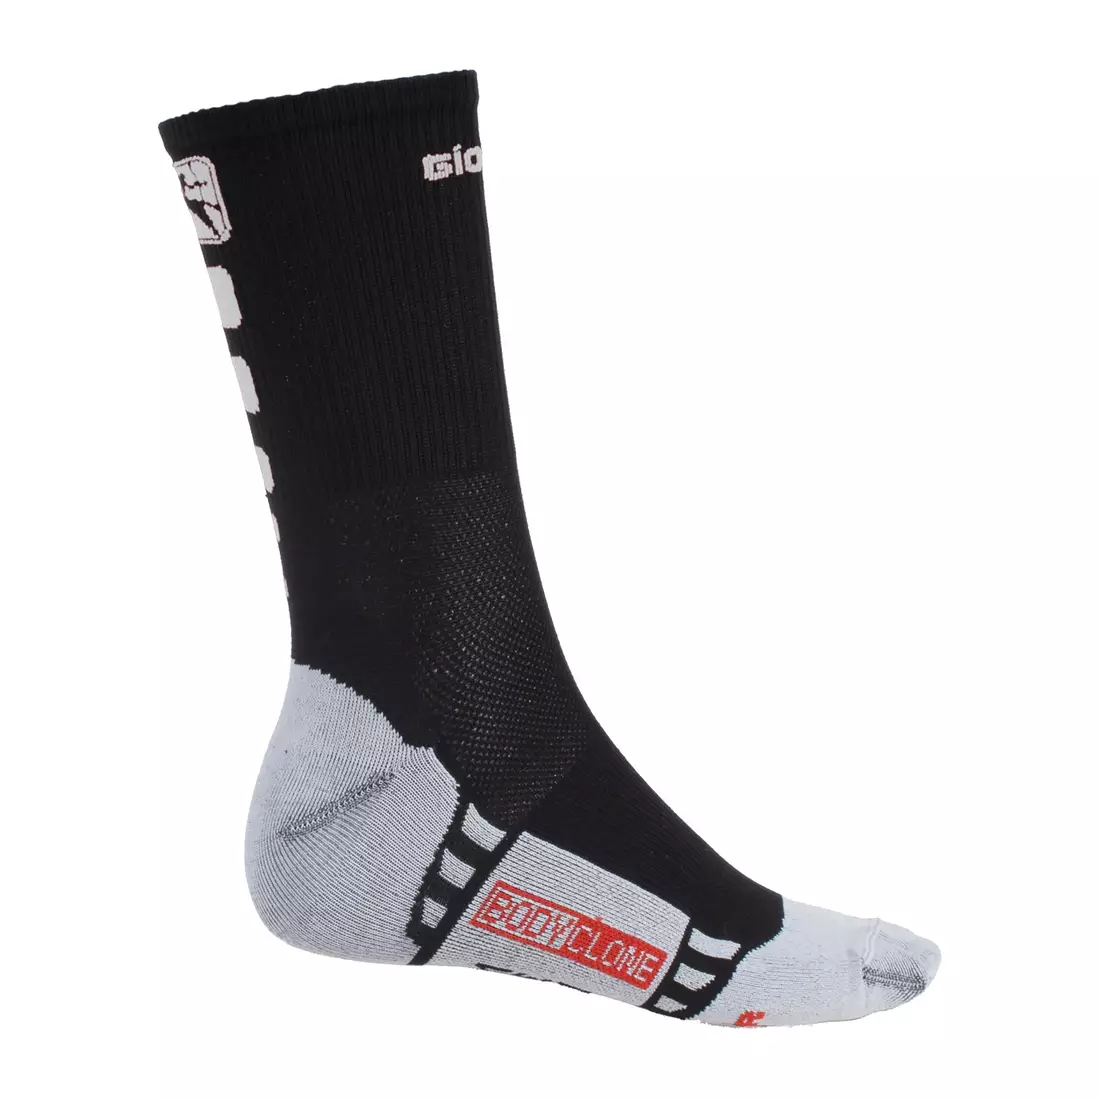 GIORDANA FR-C TALL SOCKS černobílé cyklistické ponožky